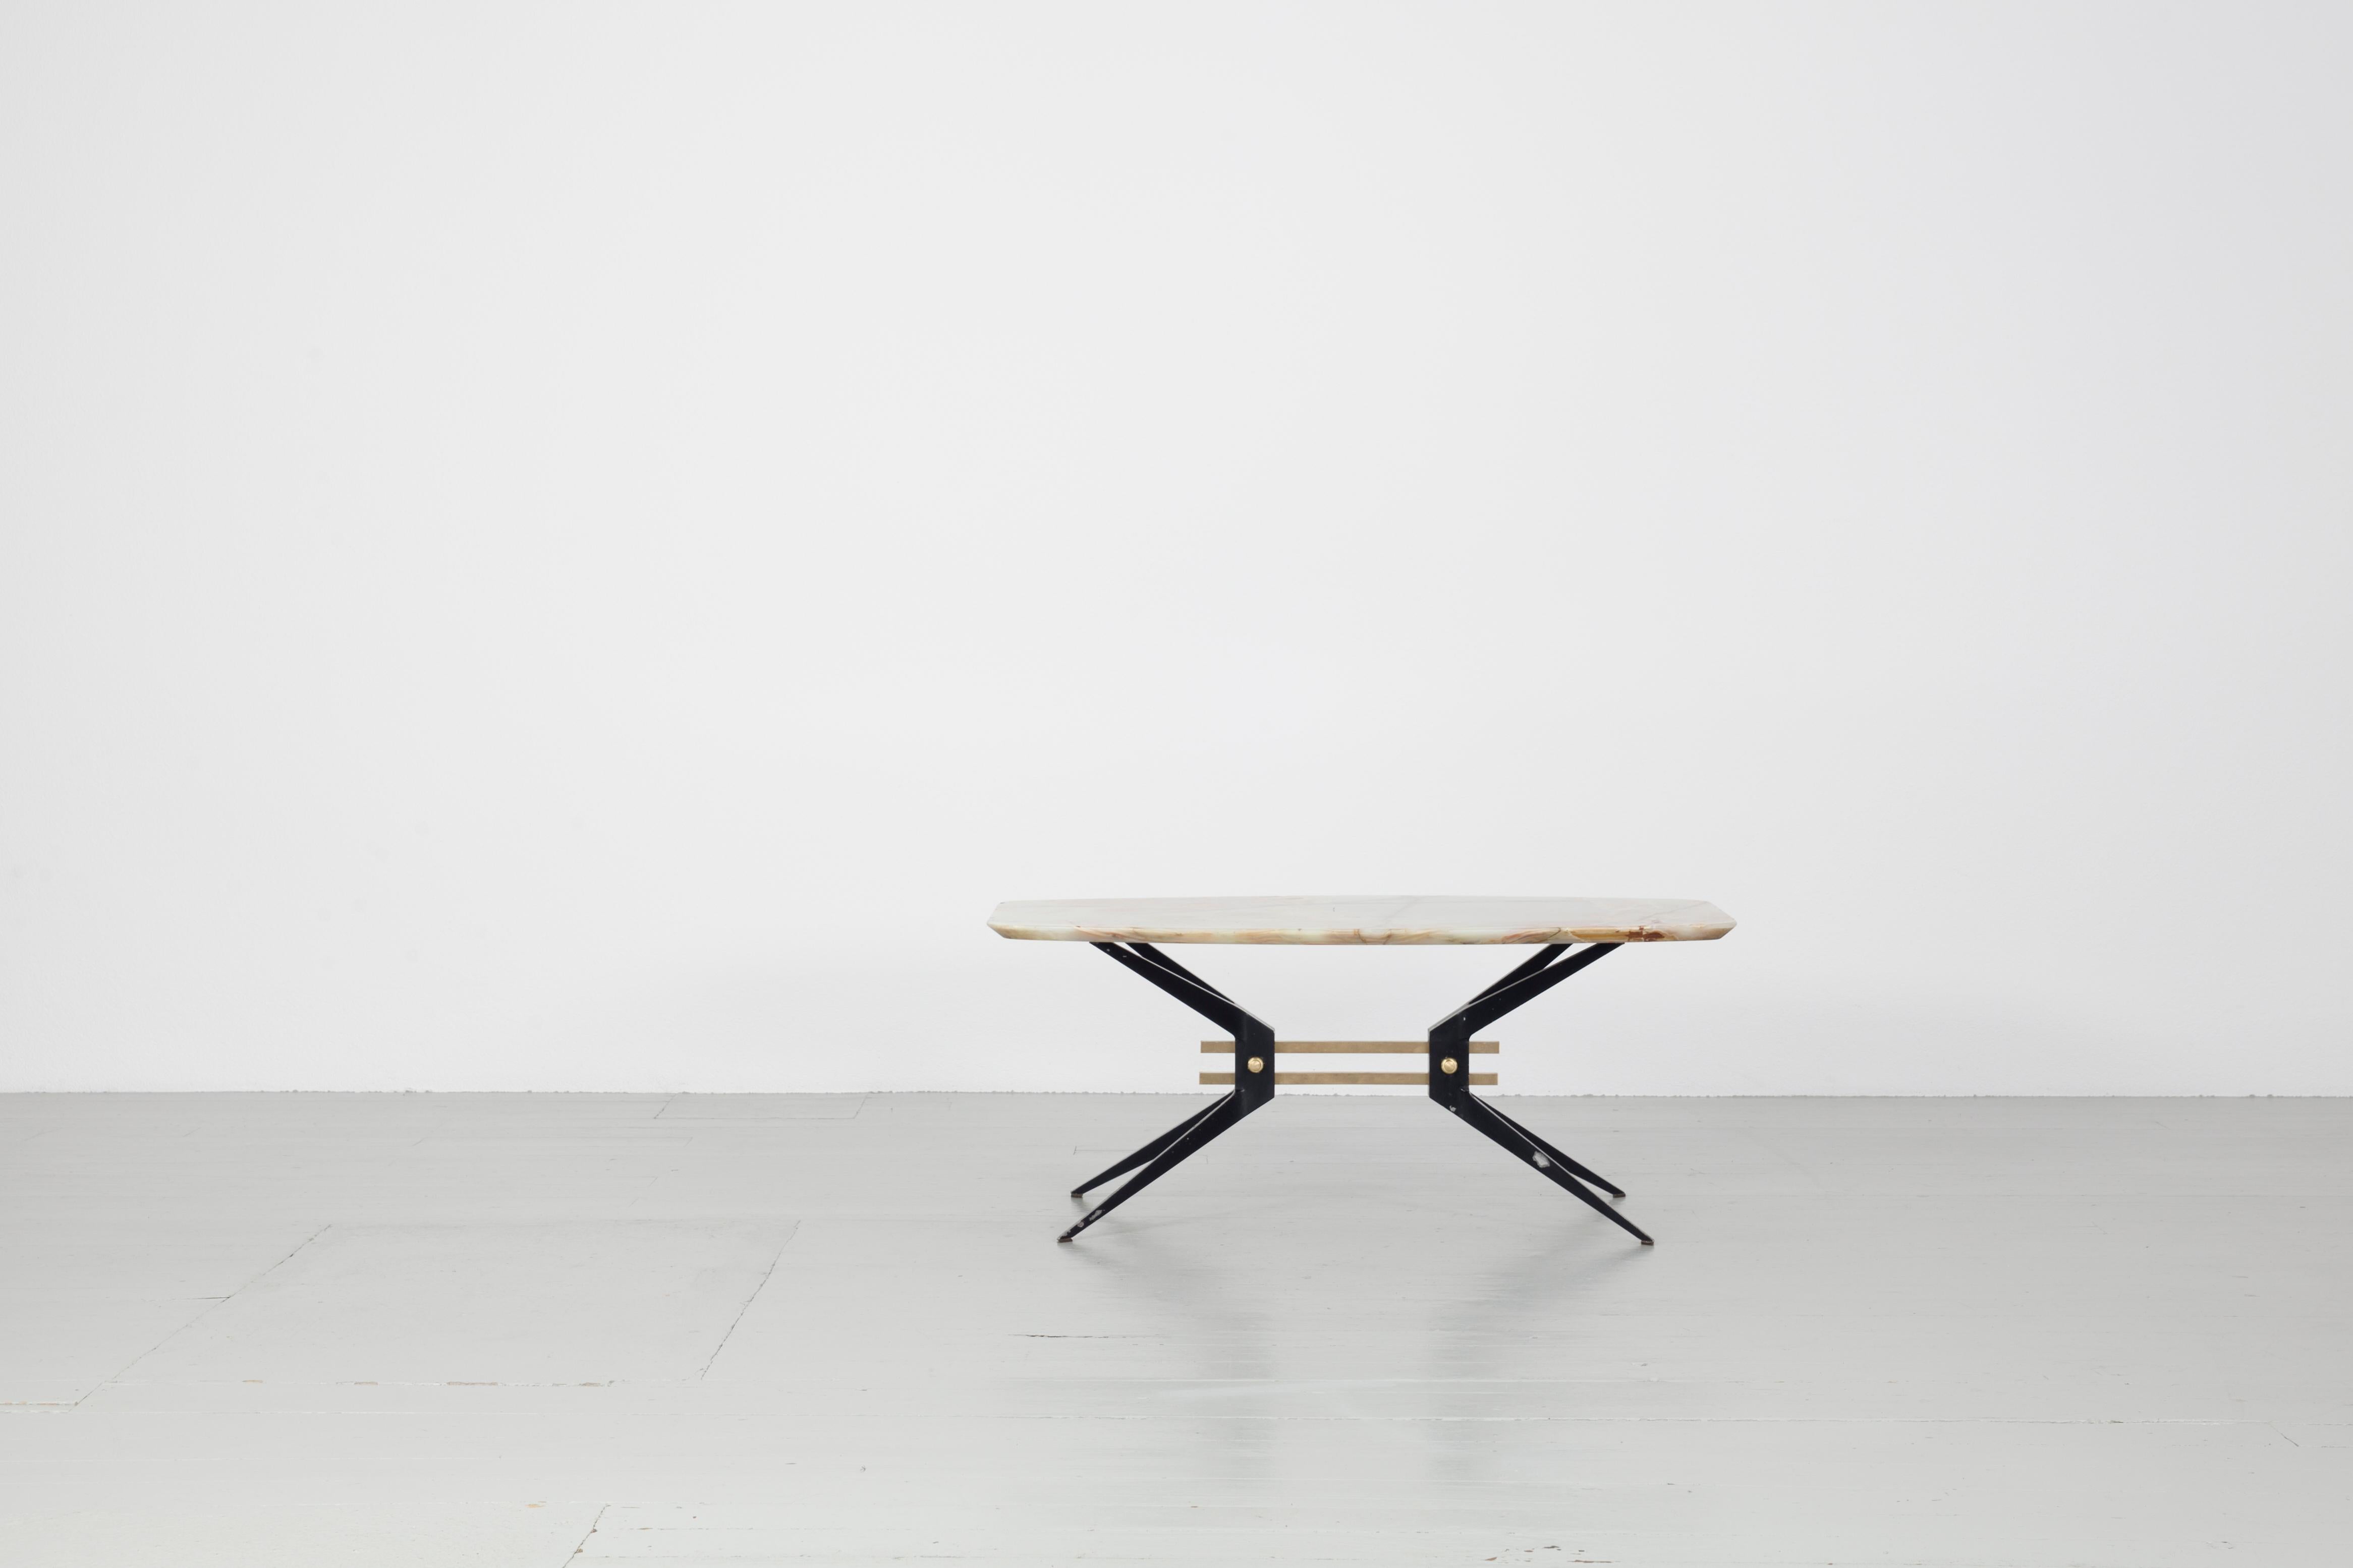 Cette table basse robuste a été fabriquée en Italie dans les années 1960. Le cadre de la table, en aluminium laqué noir, constitue une base solide pour le lourd plateau en pierre. Deux entretoises en laiton relient les pieds effilés de la table pour